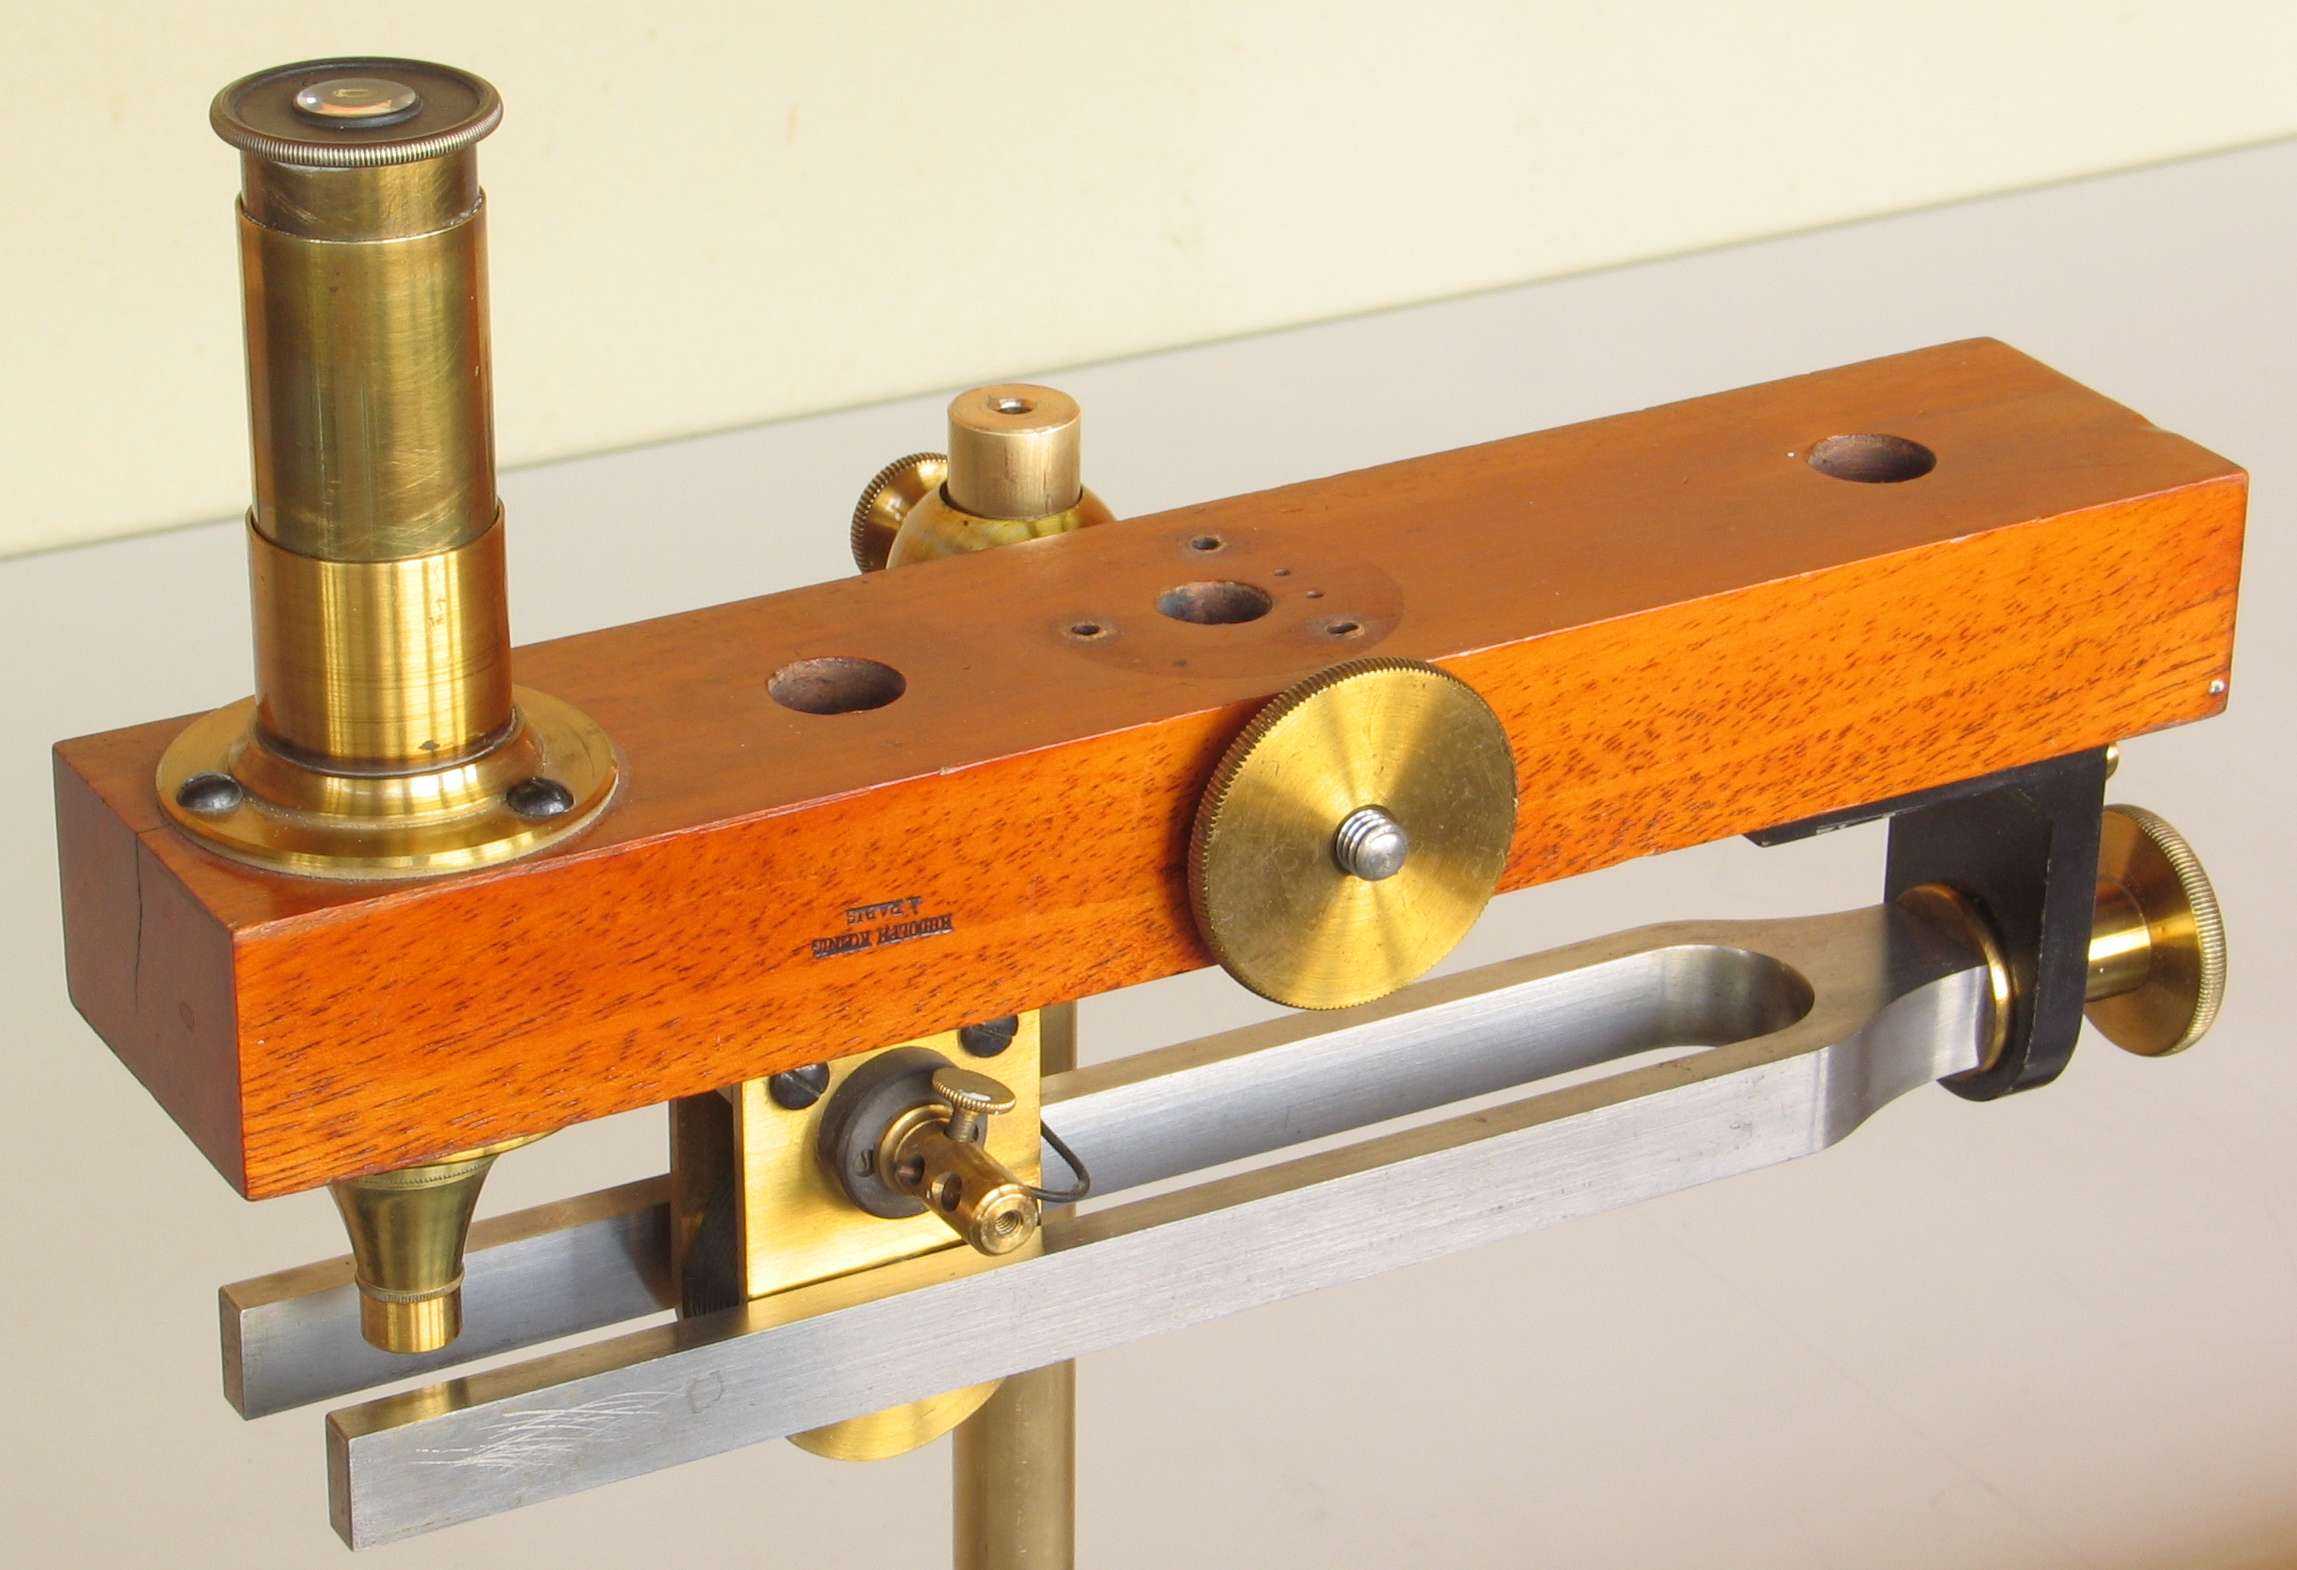 Comparateur optique de Helmholtz
(microscope à vibrations)